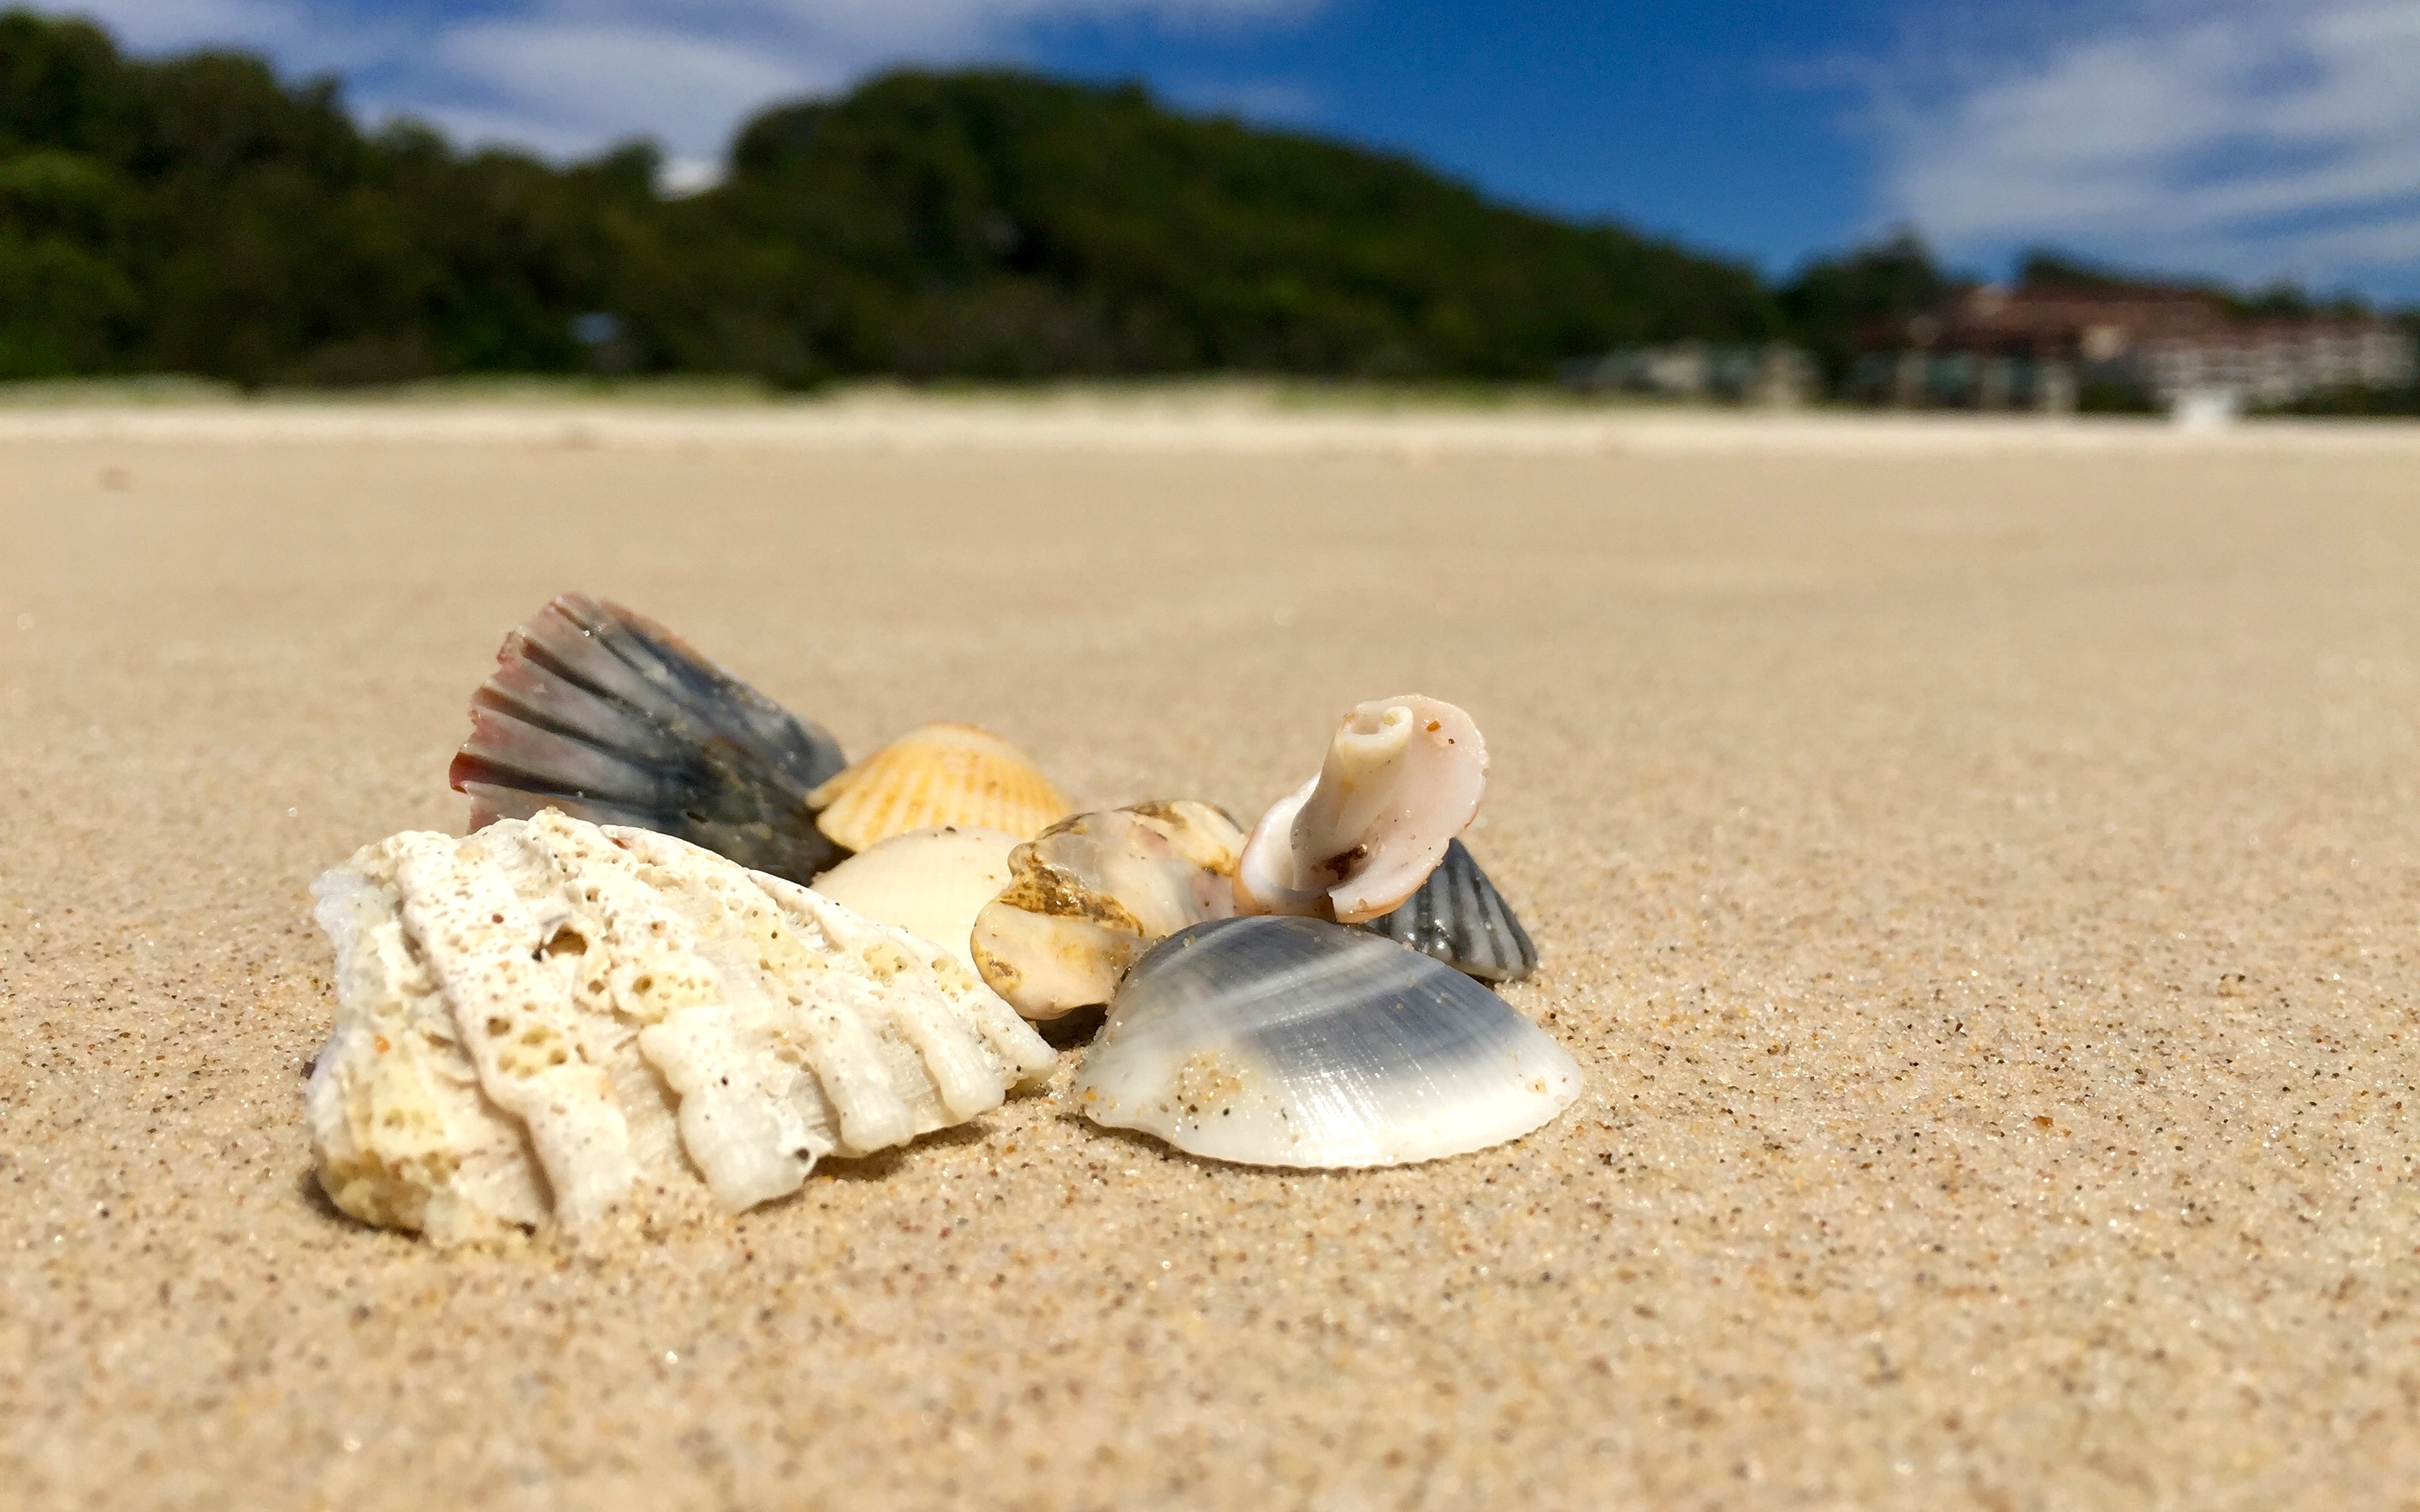 Seashells by the Seashore